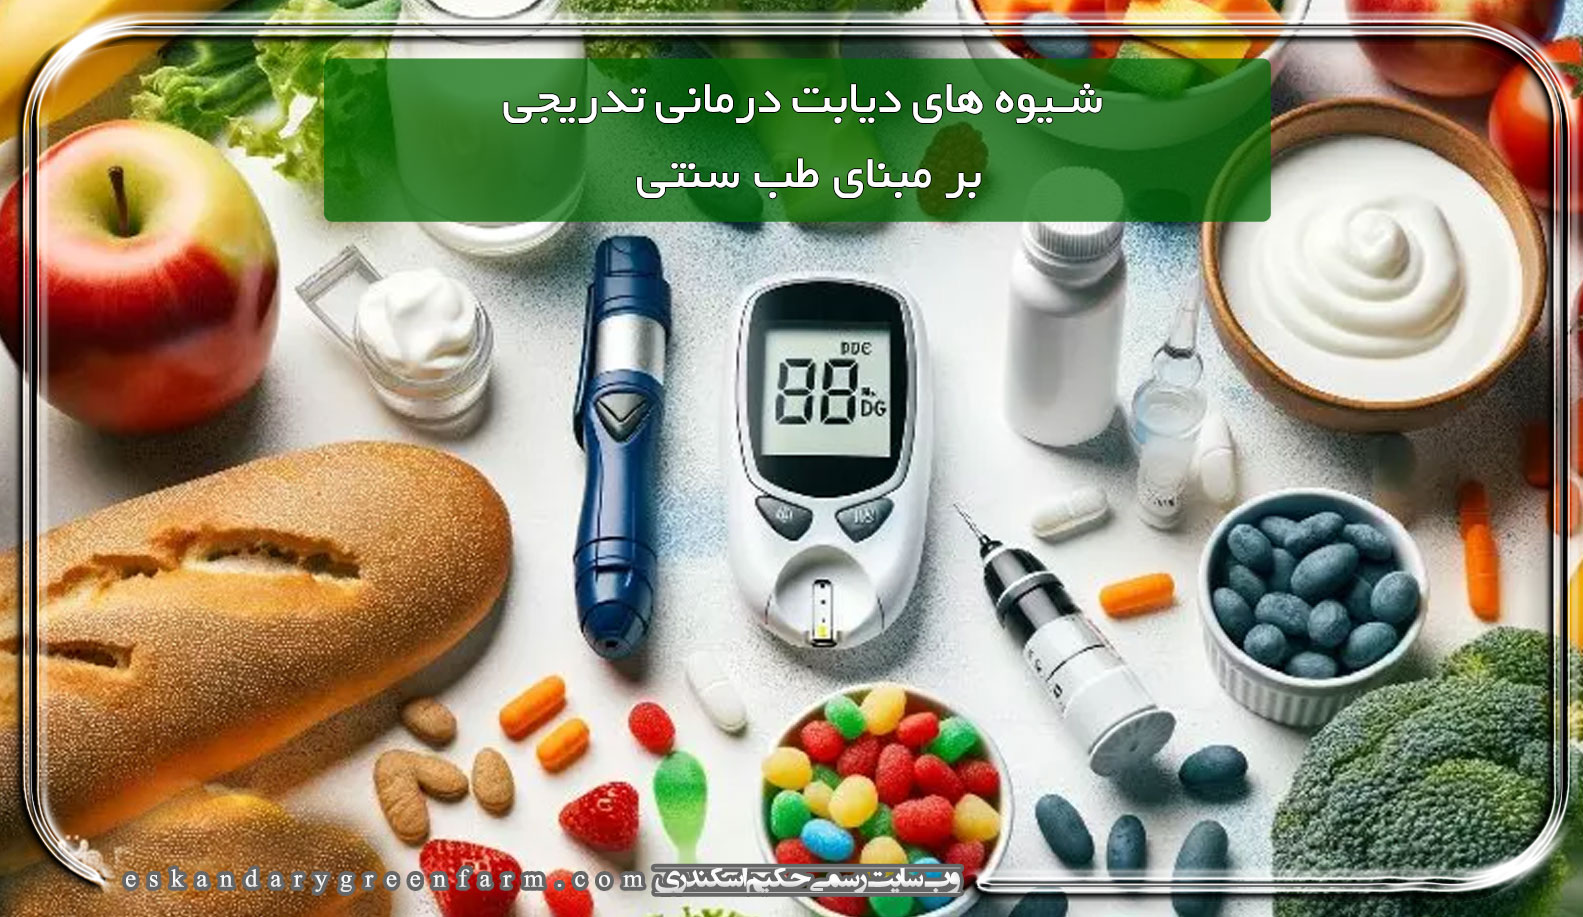 شیوه های دیابت درمانی تدریجی بر مبنای طب سنتی